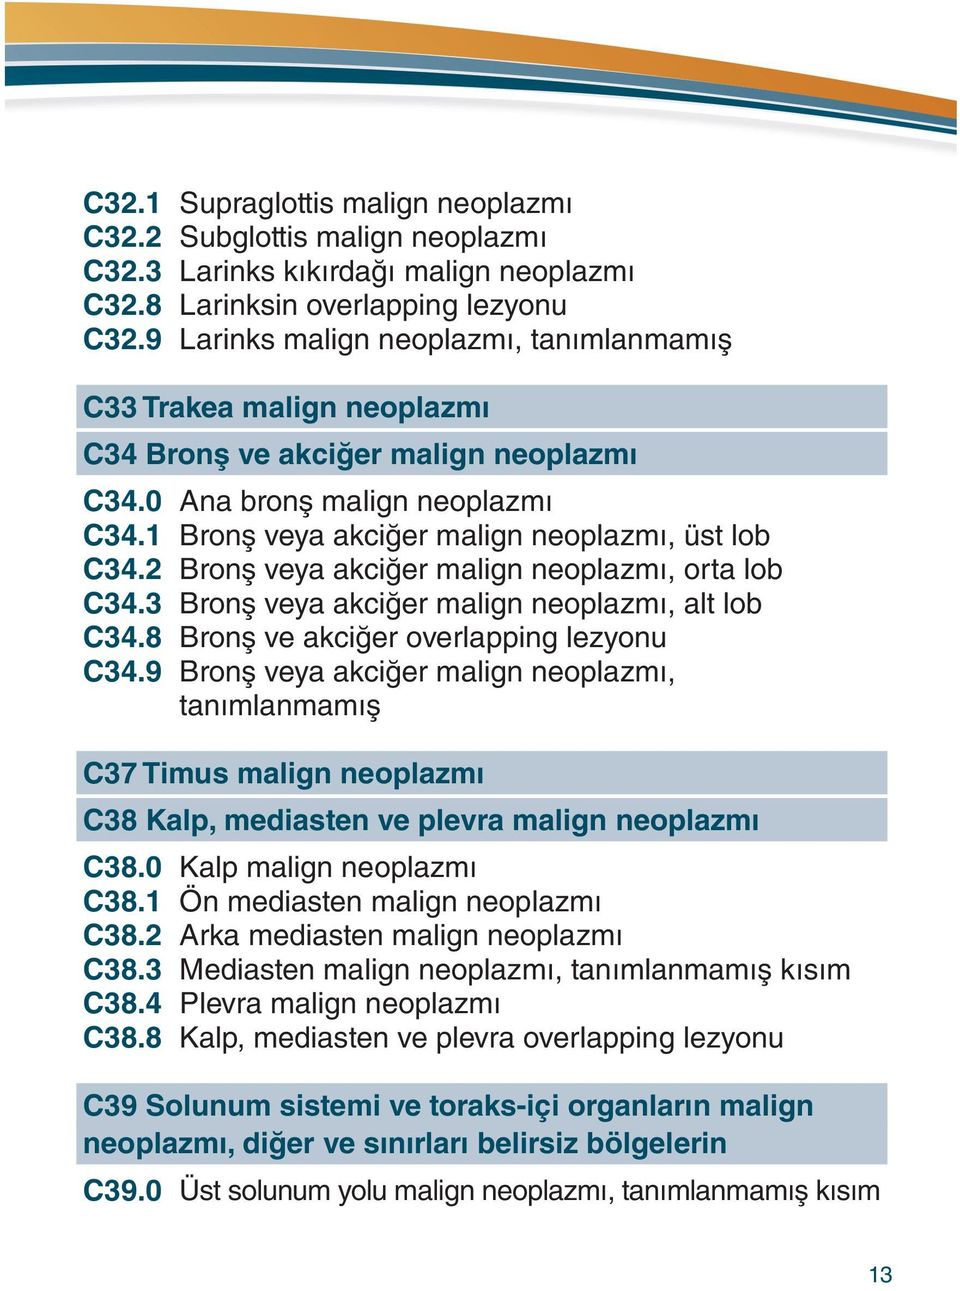 2 Bronş veya akciğer malign neoplazmı, orta lob C34.3 Bronş veya akciğer malign neoplazmı, alt lob C34.8 Bronş ve akciğer overlapping lezyonu C34.